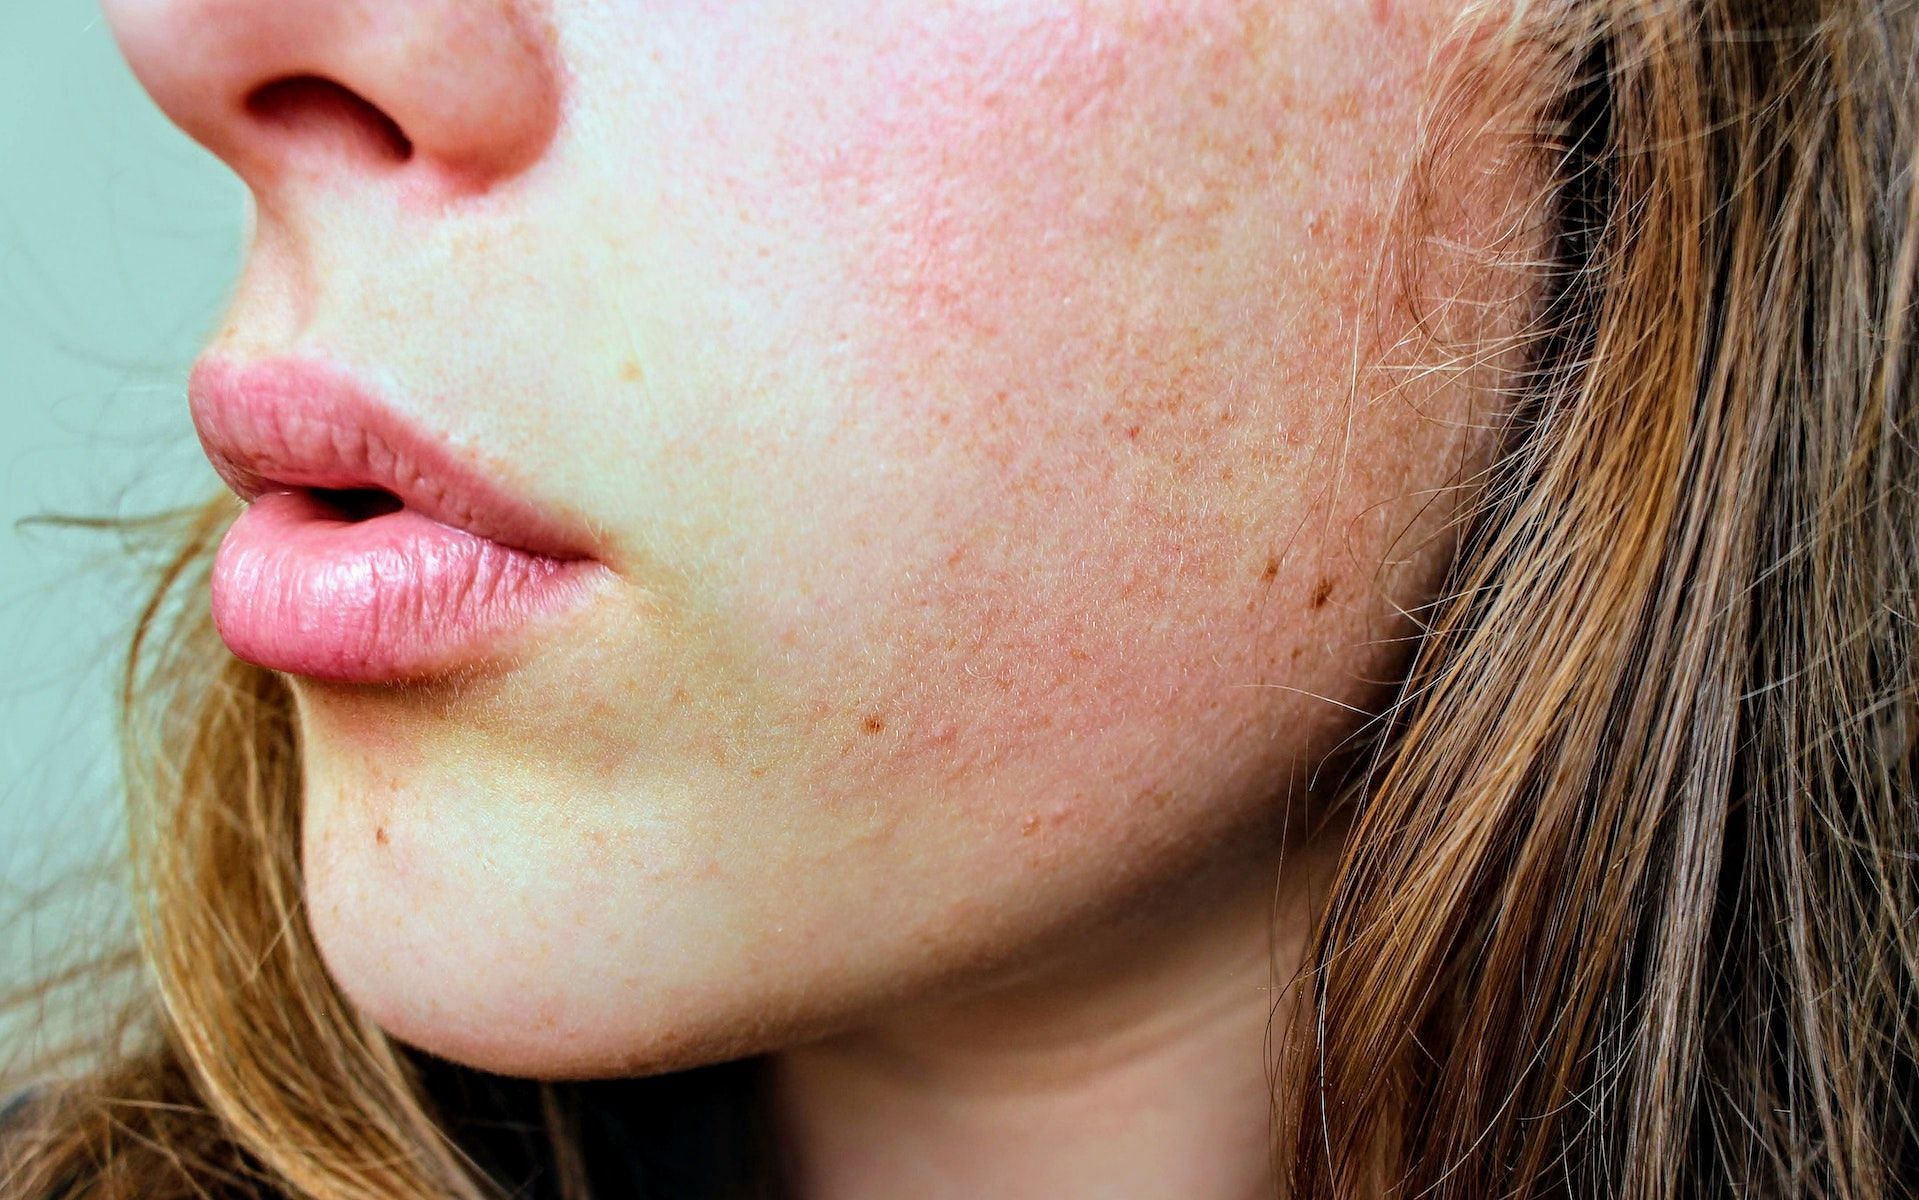 Dry skin can be a symptom of eczema in adults. (Photo via Pexels/Jenna Hamra)